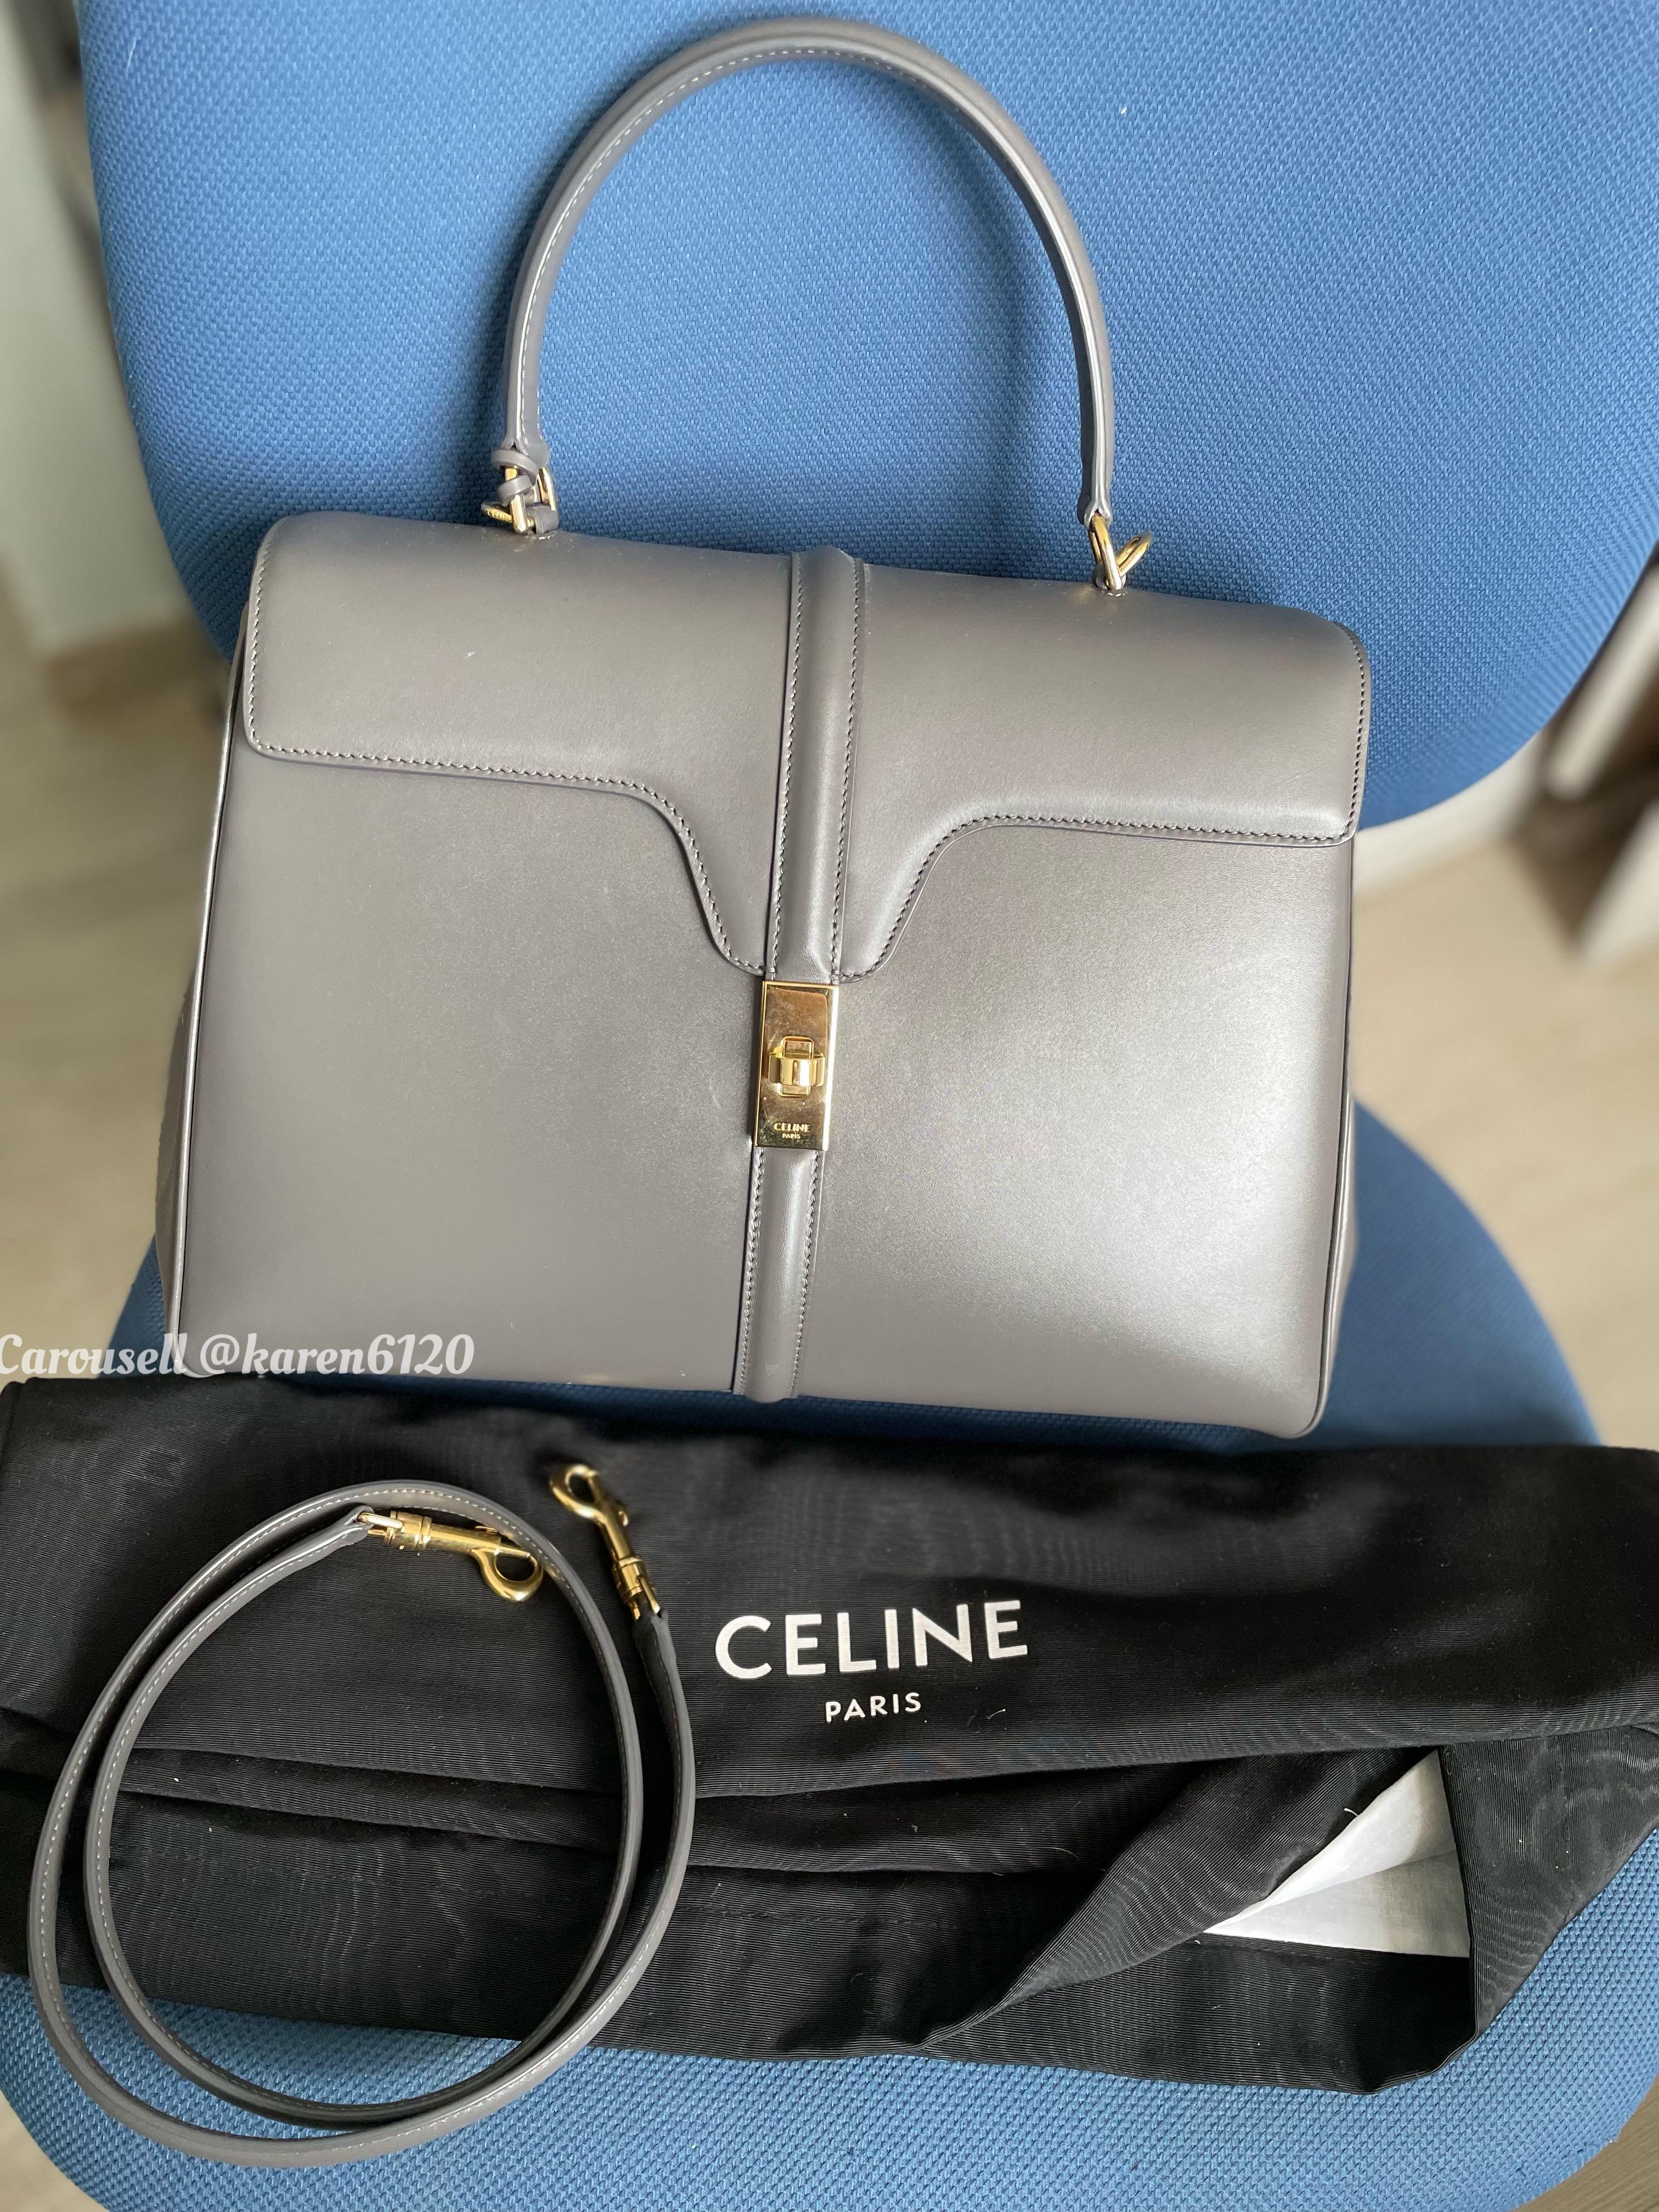 Celine Medium 16 Bag in Natural Calfskin - Lisa (Blackpink)